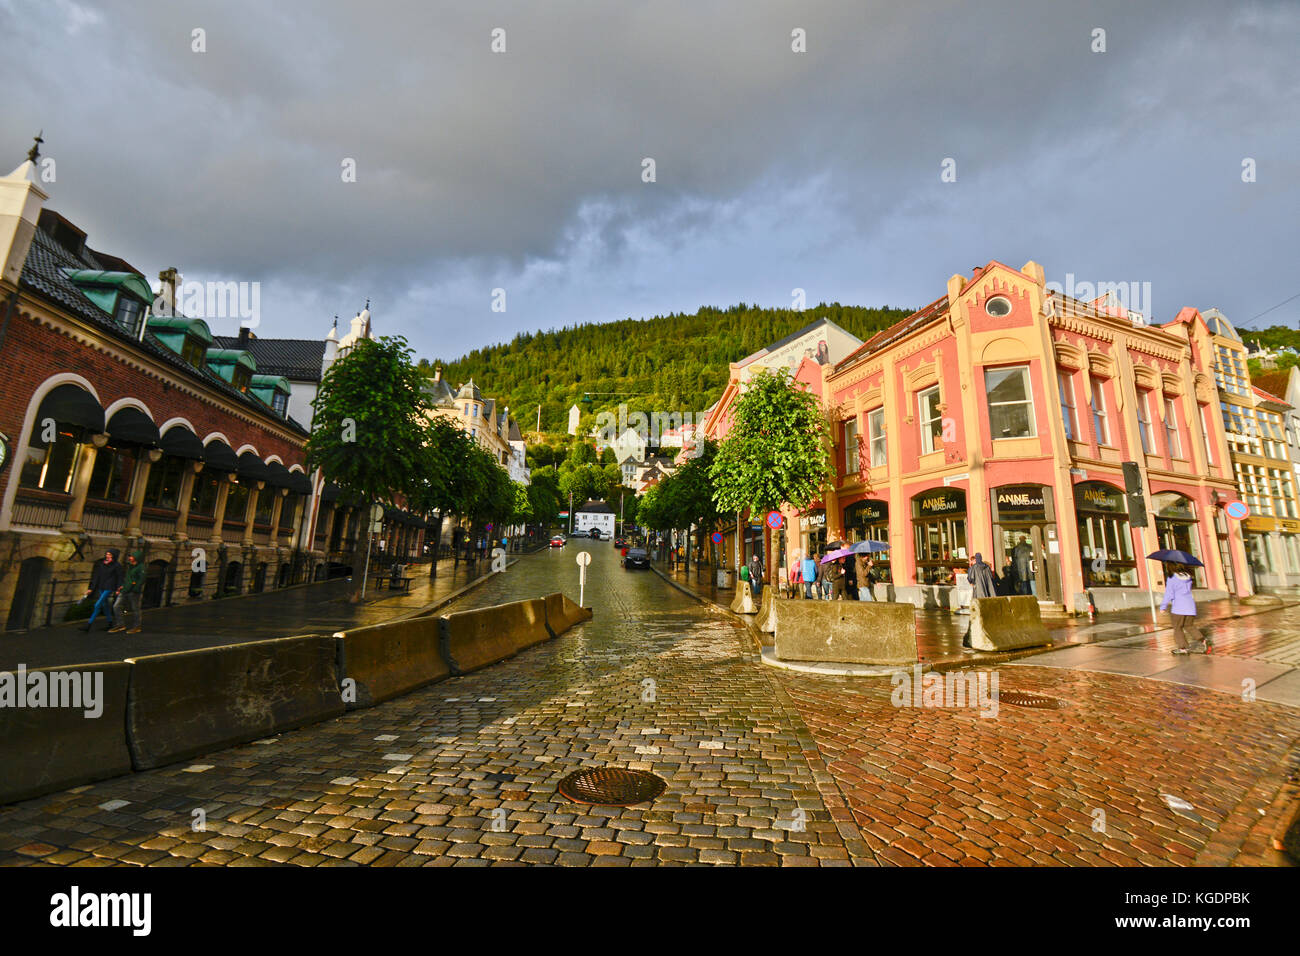 Vetrlidsallmenningen street, Bergen, Norway Stock Photo